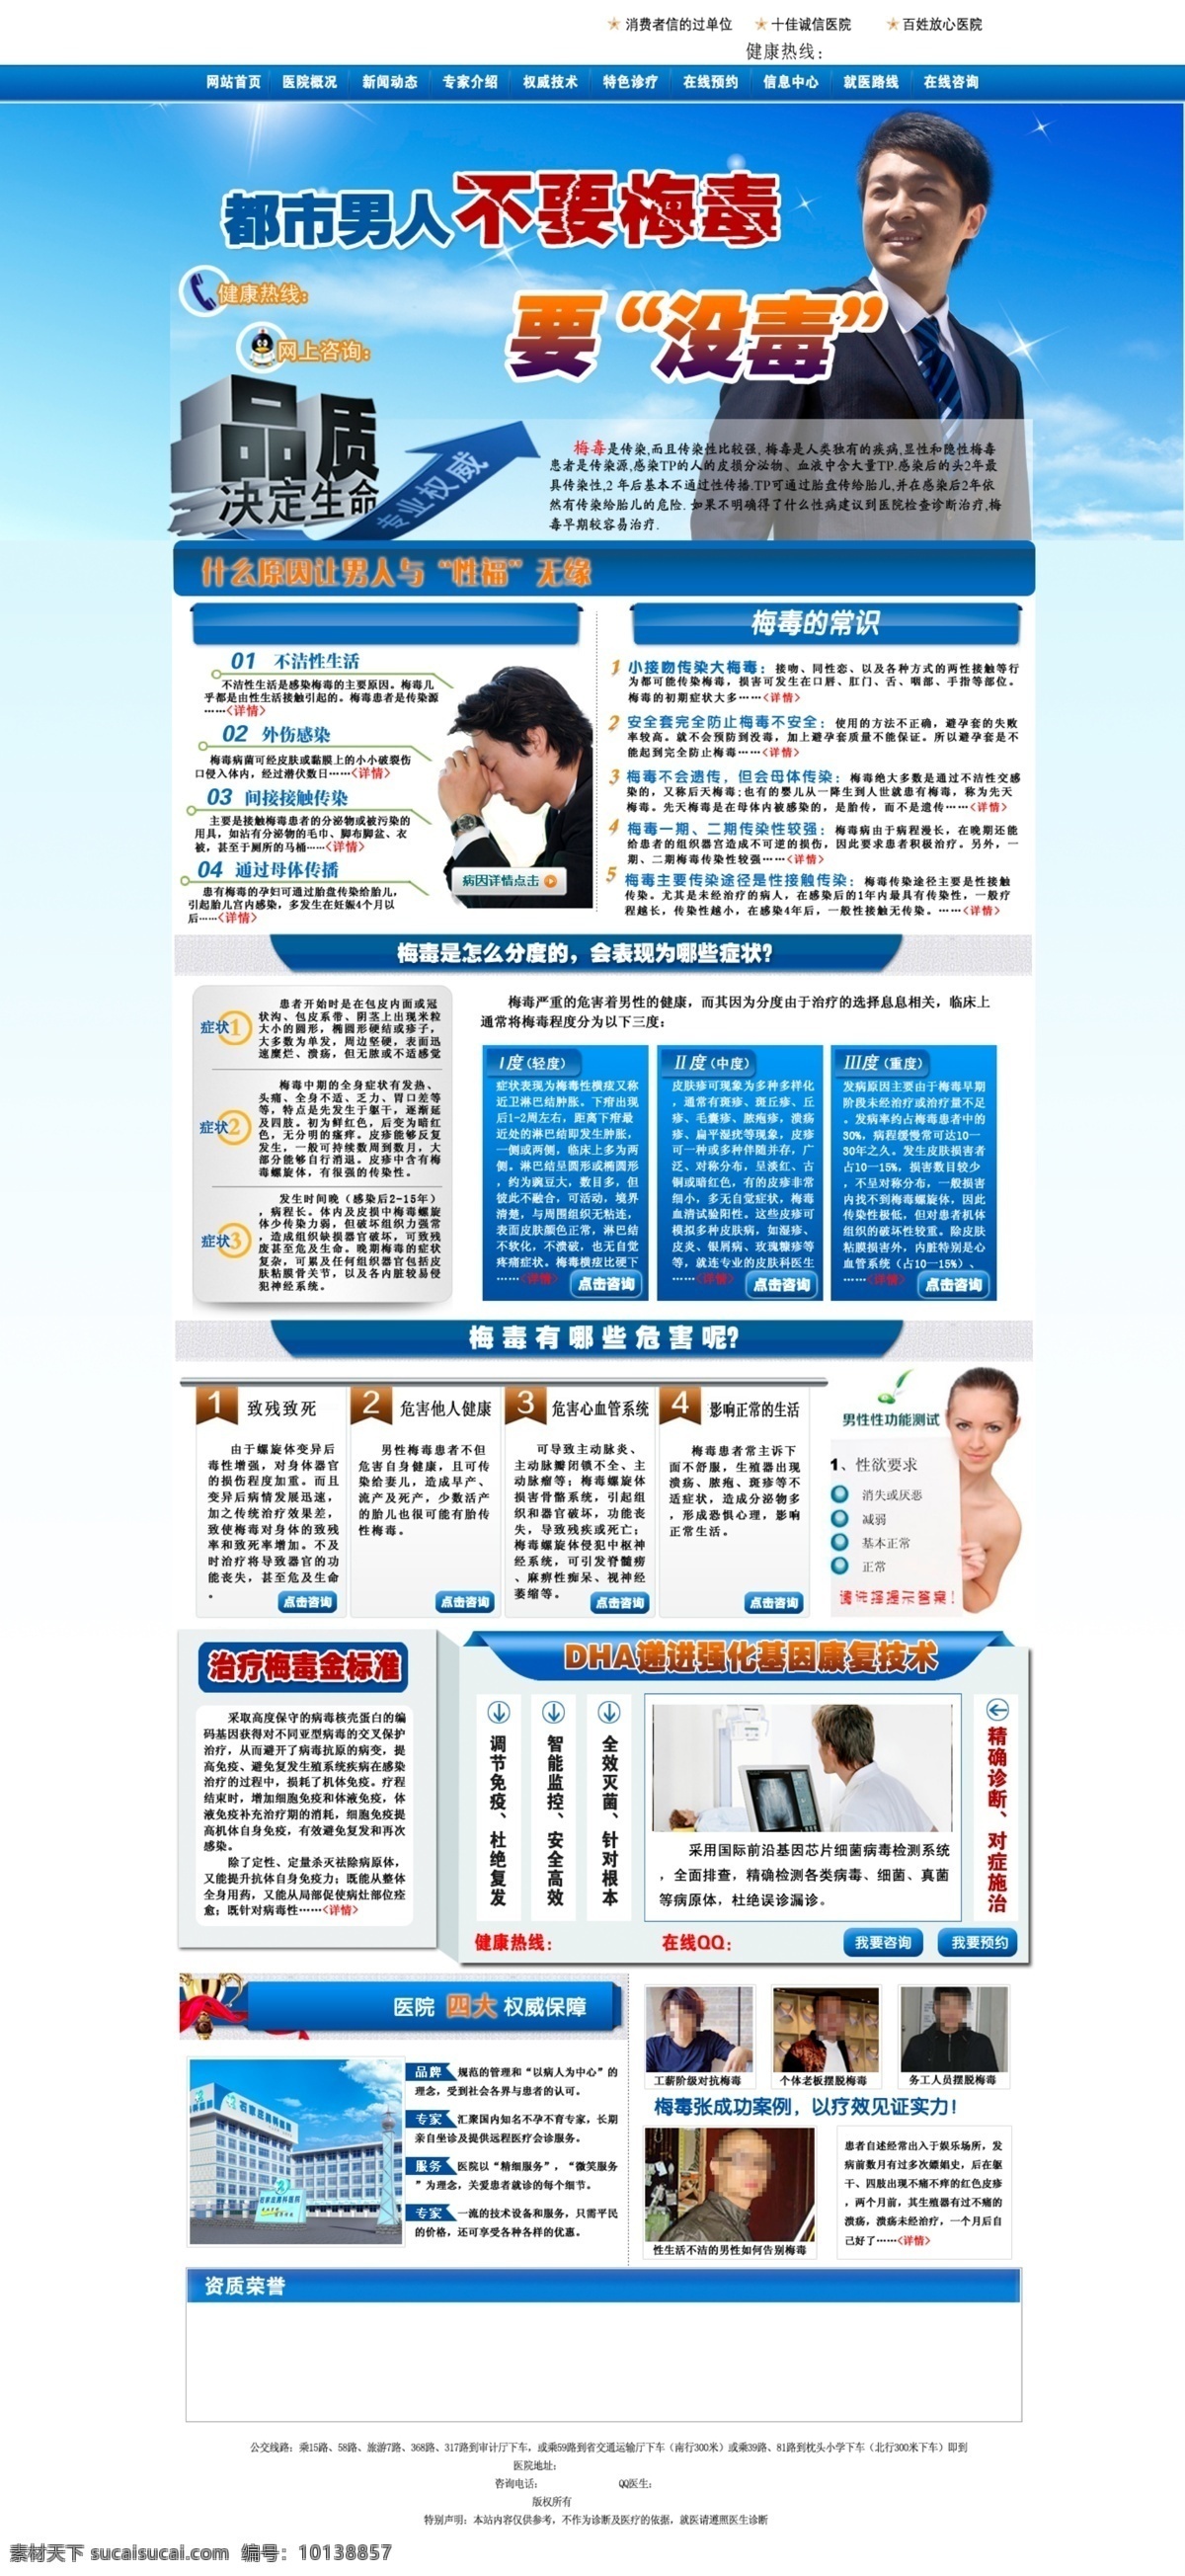 男科网站 梅毒 男科医院 男人 梅毒危害 思考的男人 中文模板 网页模板 源文件